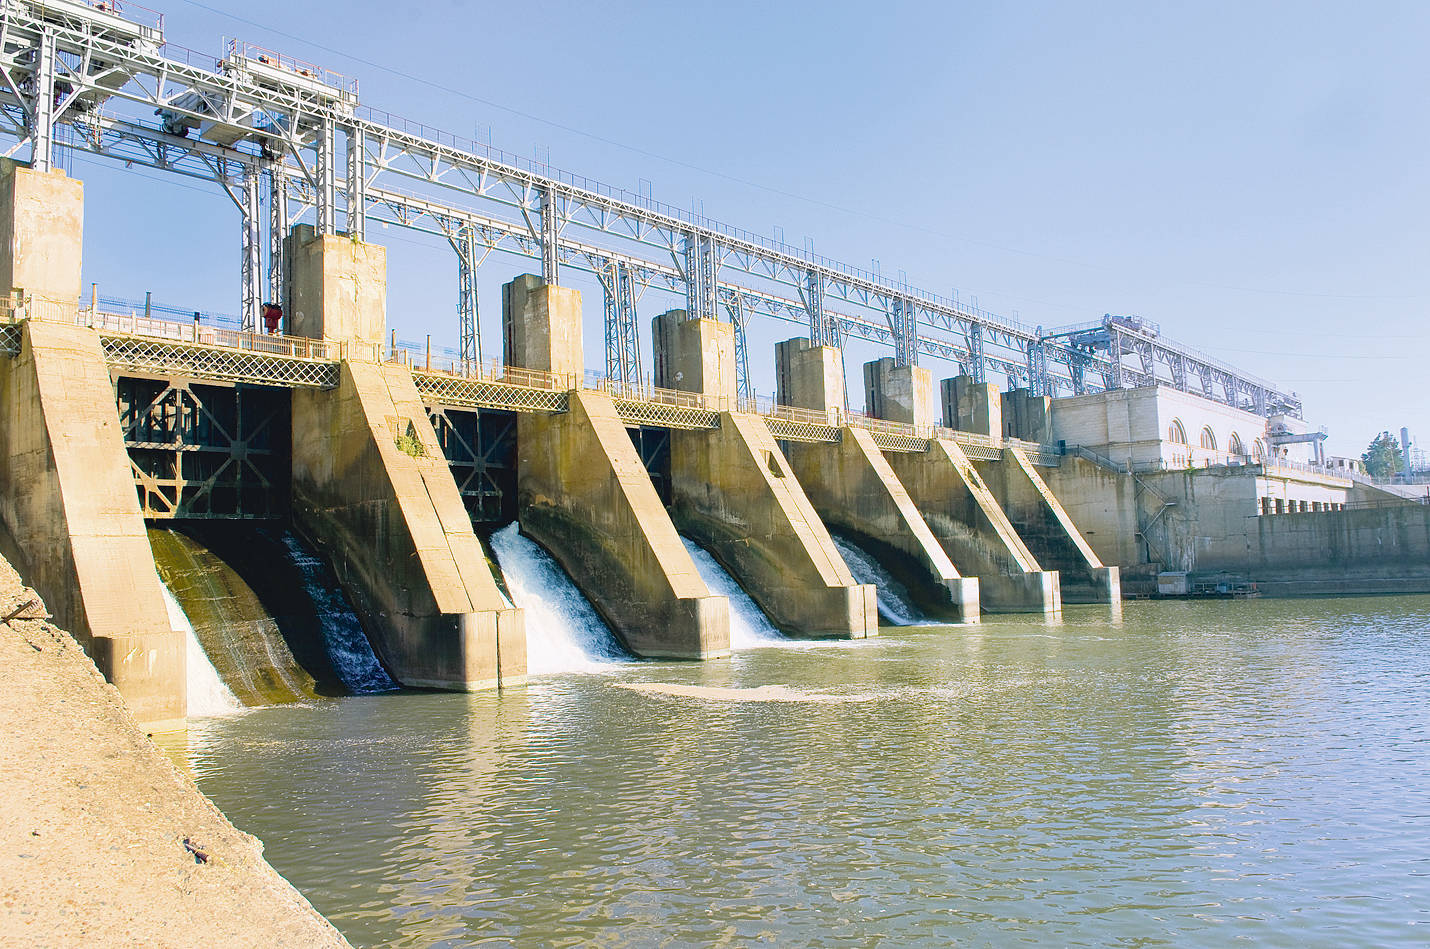 Producătorul de energie verde Hidroelectrica a modernizat 10 stații electrice din Sucursala Hidrocentrale Hațeg